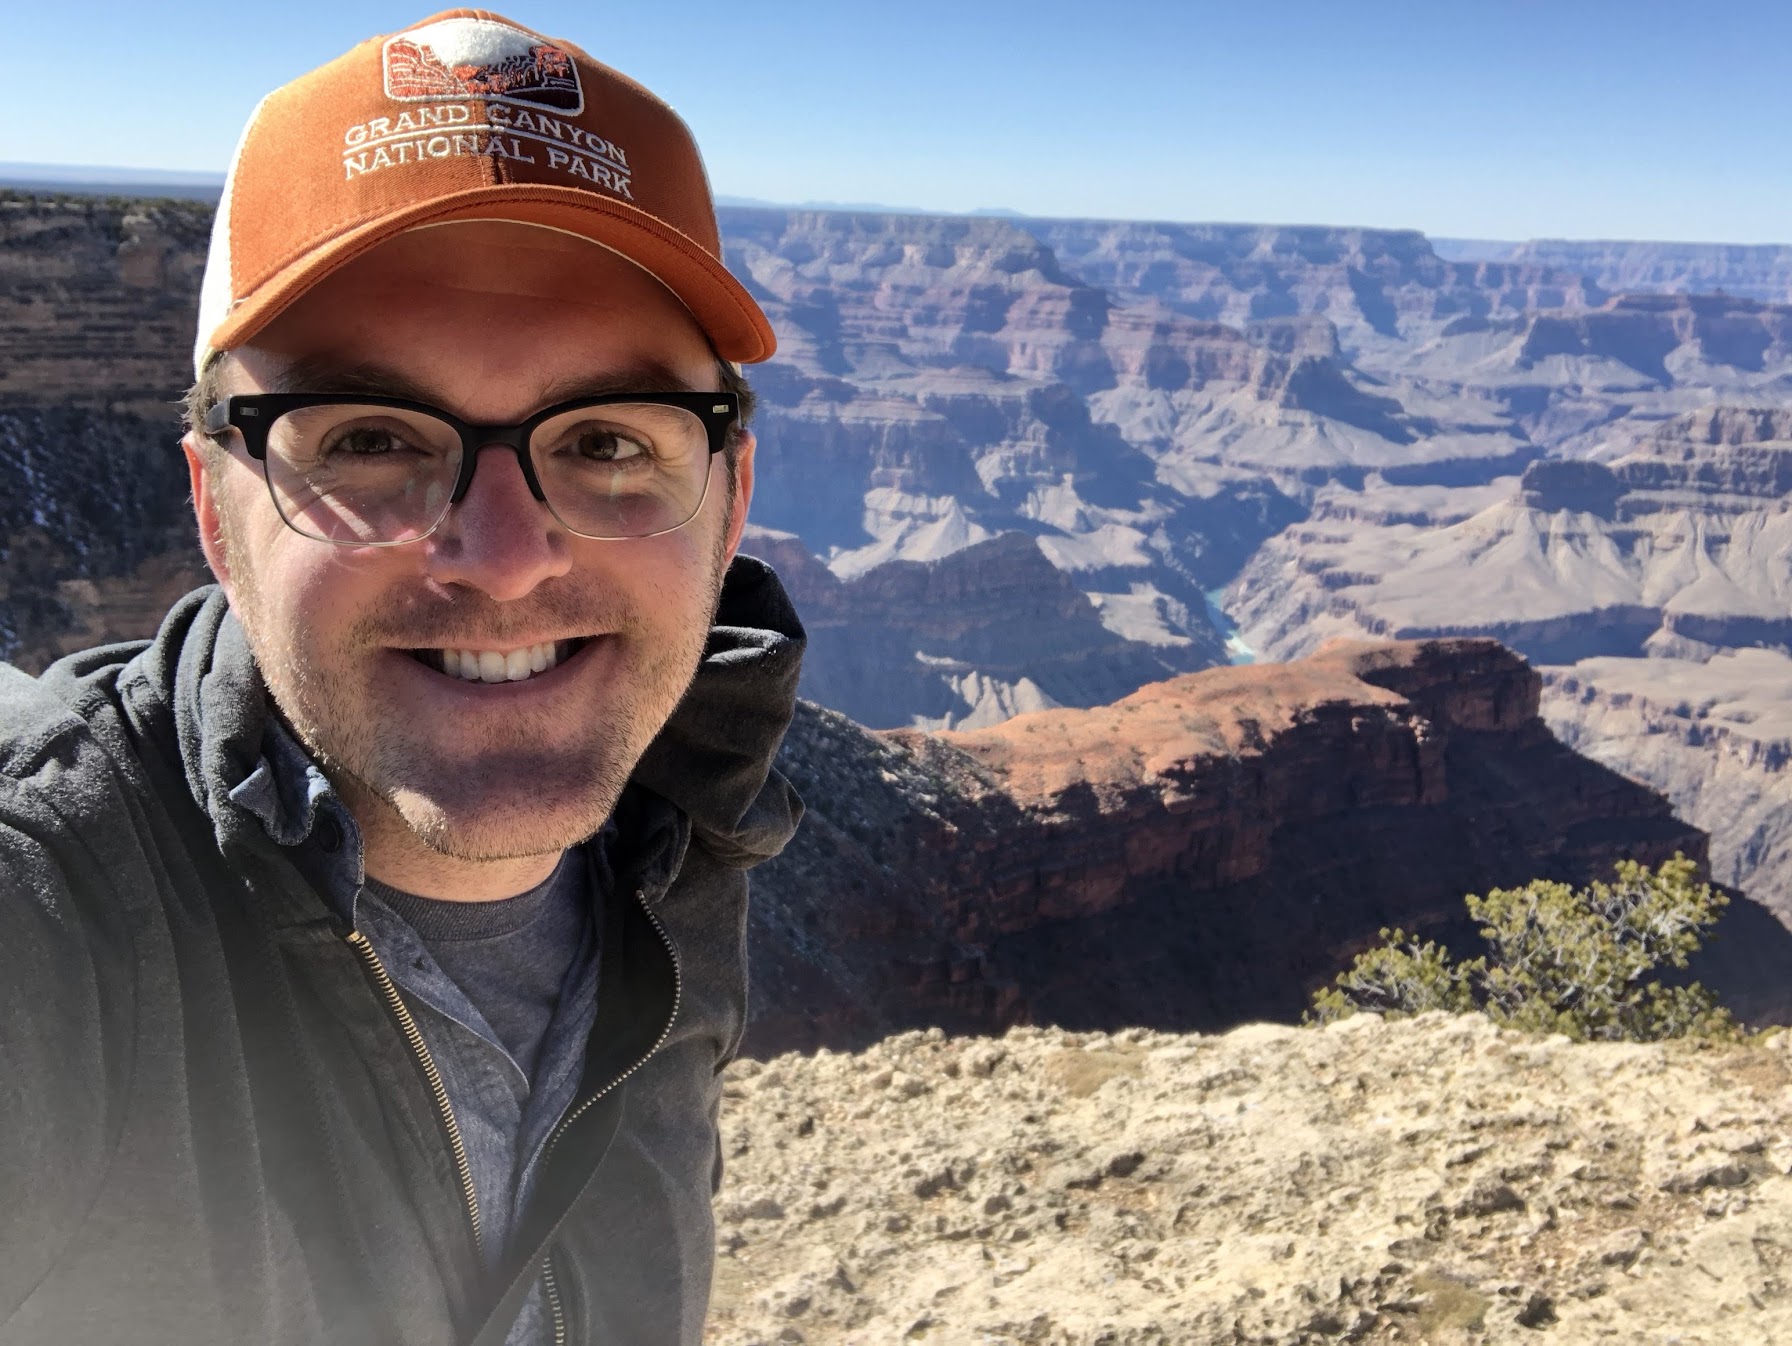 Dan at the Grand Canyon